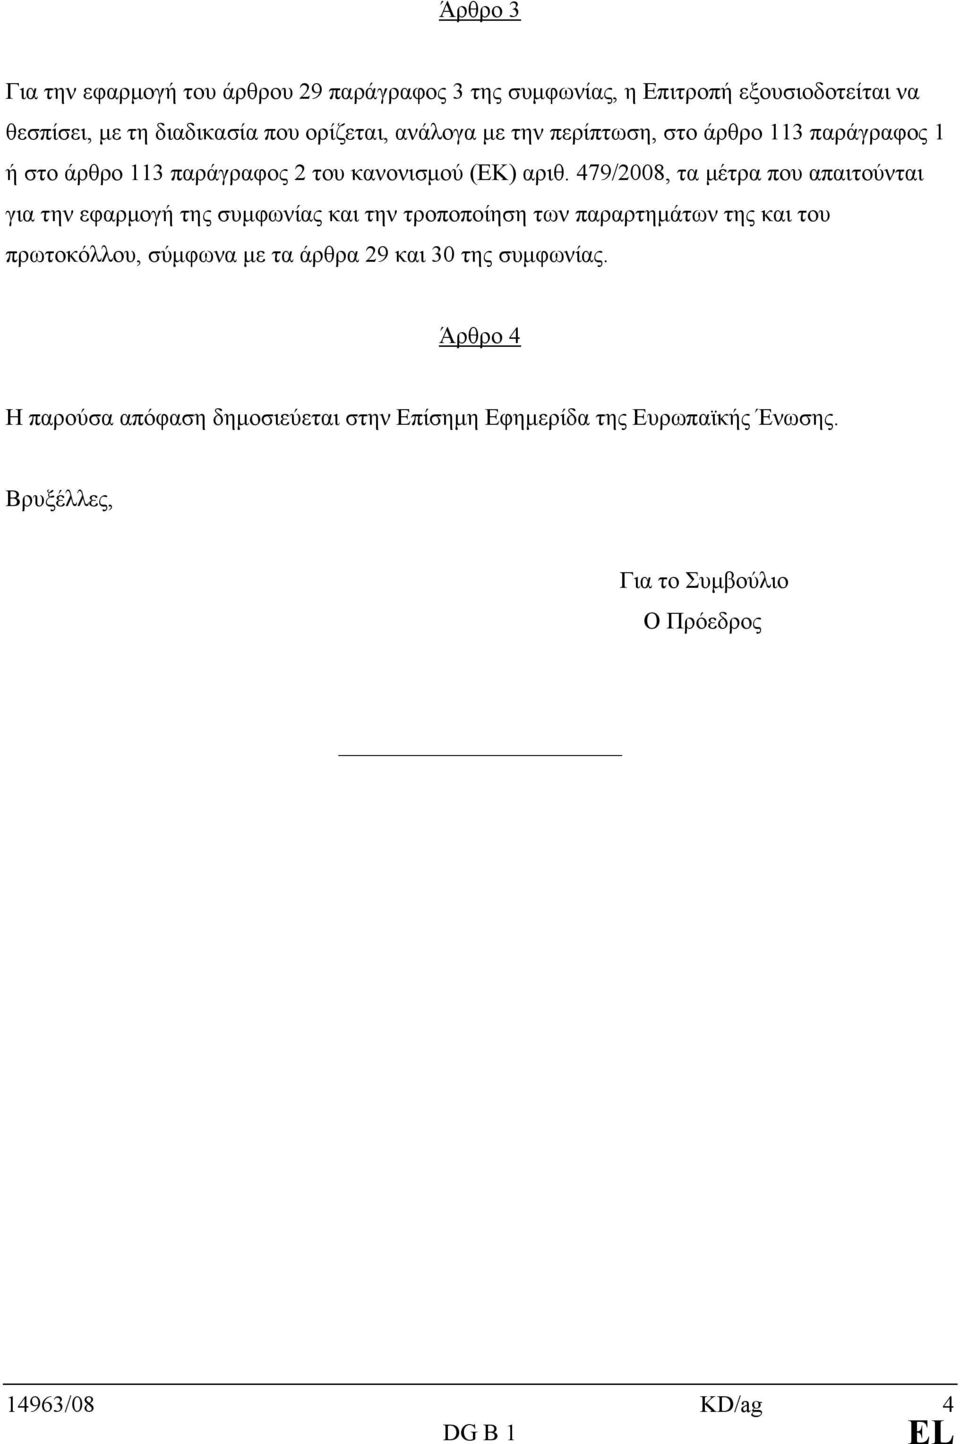 479/2008, τα μέτρα που απαιτούνται για την εφαρμογή της συμφωνίας και την τροποποίηση των παραρτημάτων της και του πρωτοκόλλου, σύμφωνα με τα